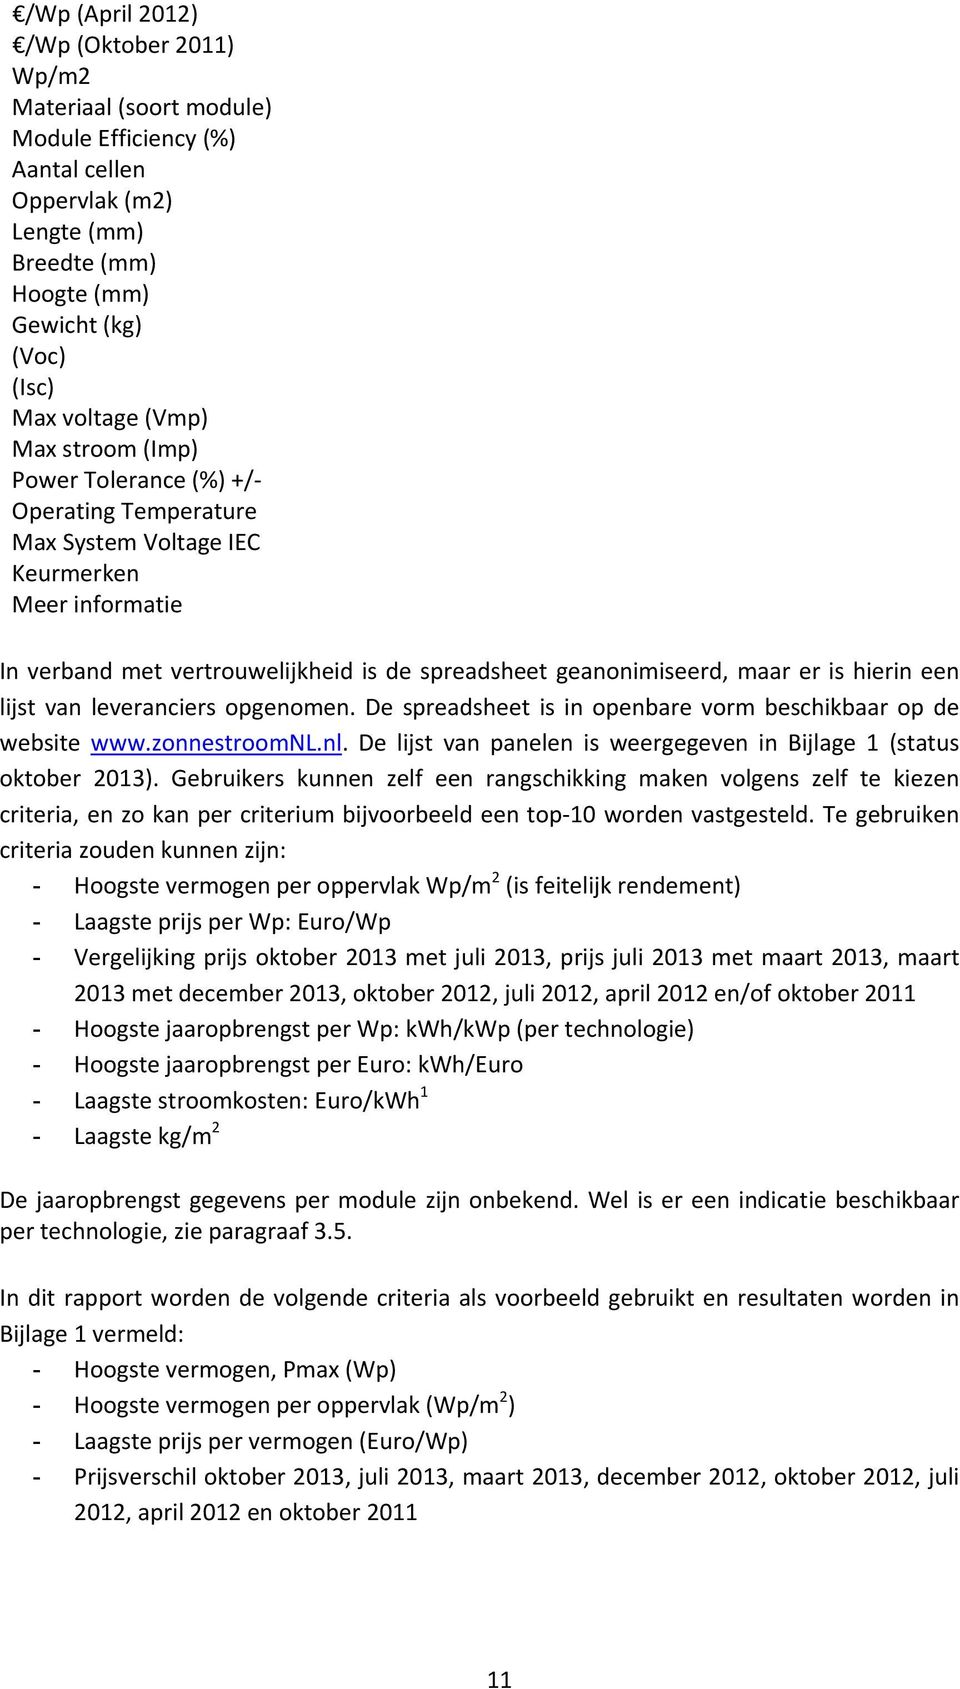 een lijst van leveranciers opgenomen. De spreadsheet is in openbare vorm beschikbaar op de website www.zonnestroomnl.nl. De lijst van panelen is weergegeven in Bijlage 1 (status oktober 2013).